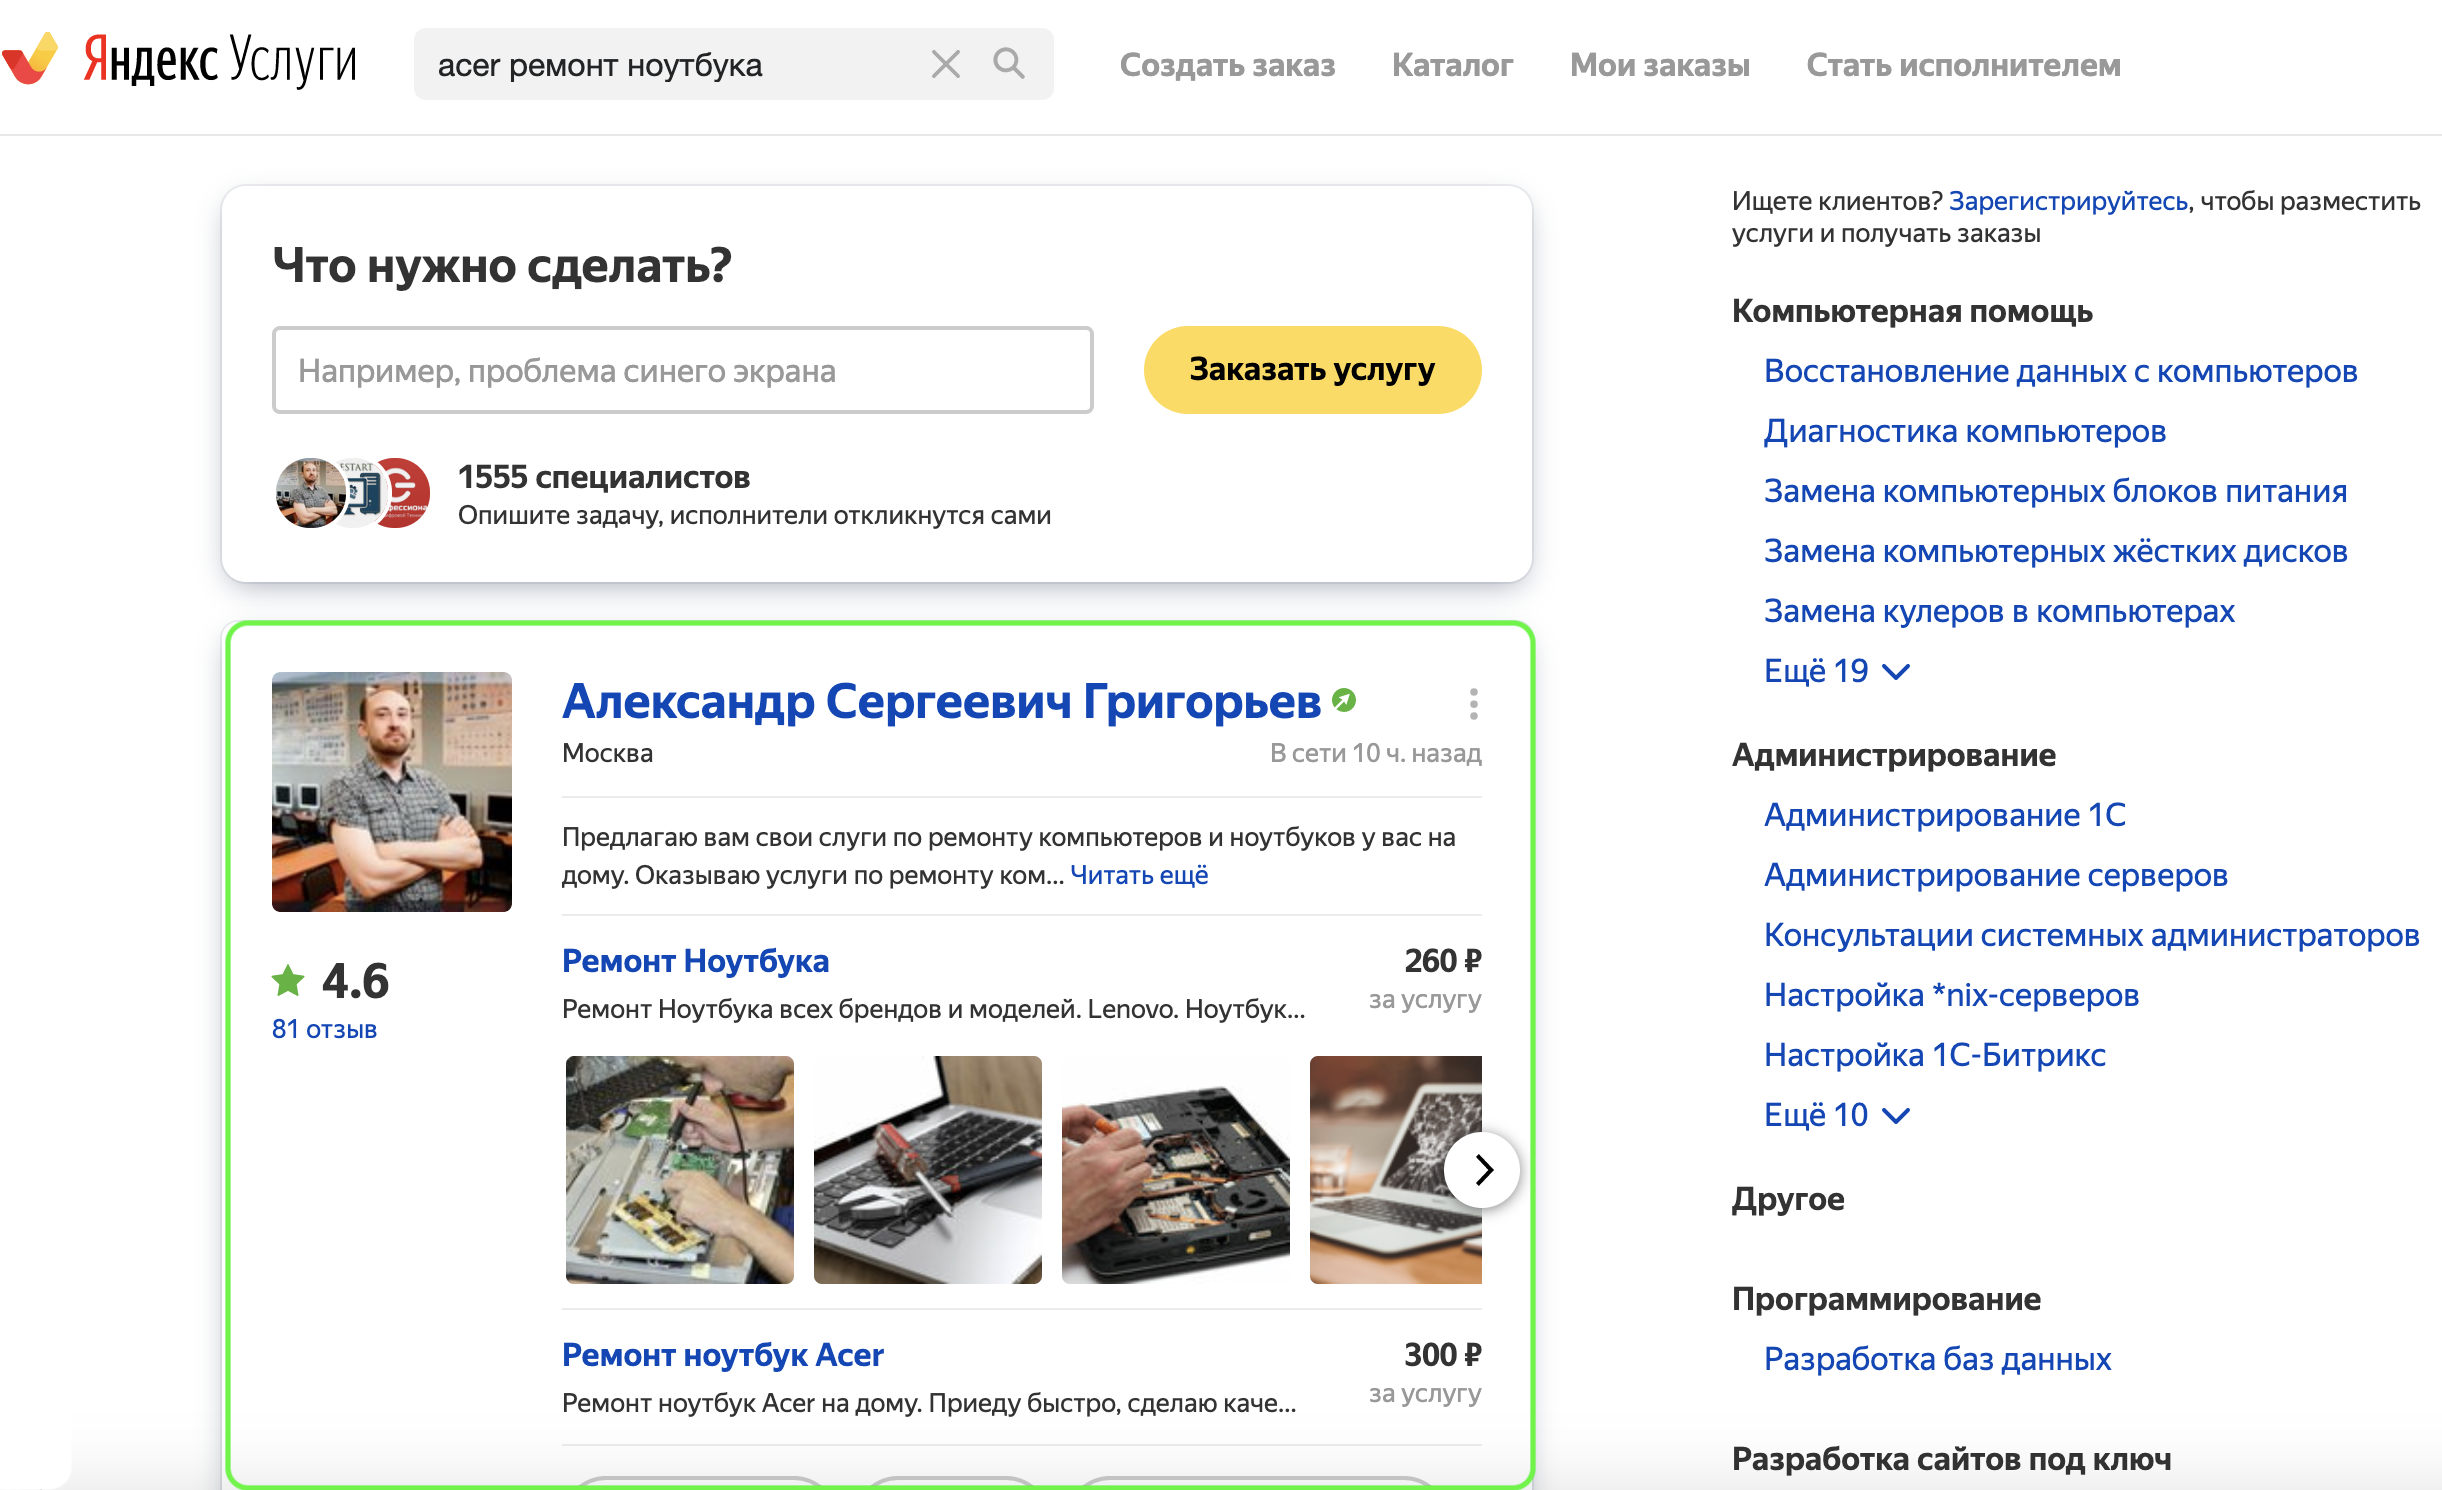 Новый инструмент для бизнеса: продвижение профиля на Яндекс.Услугах